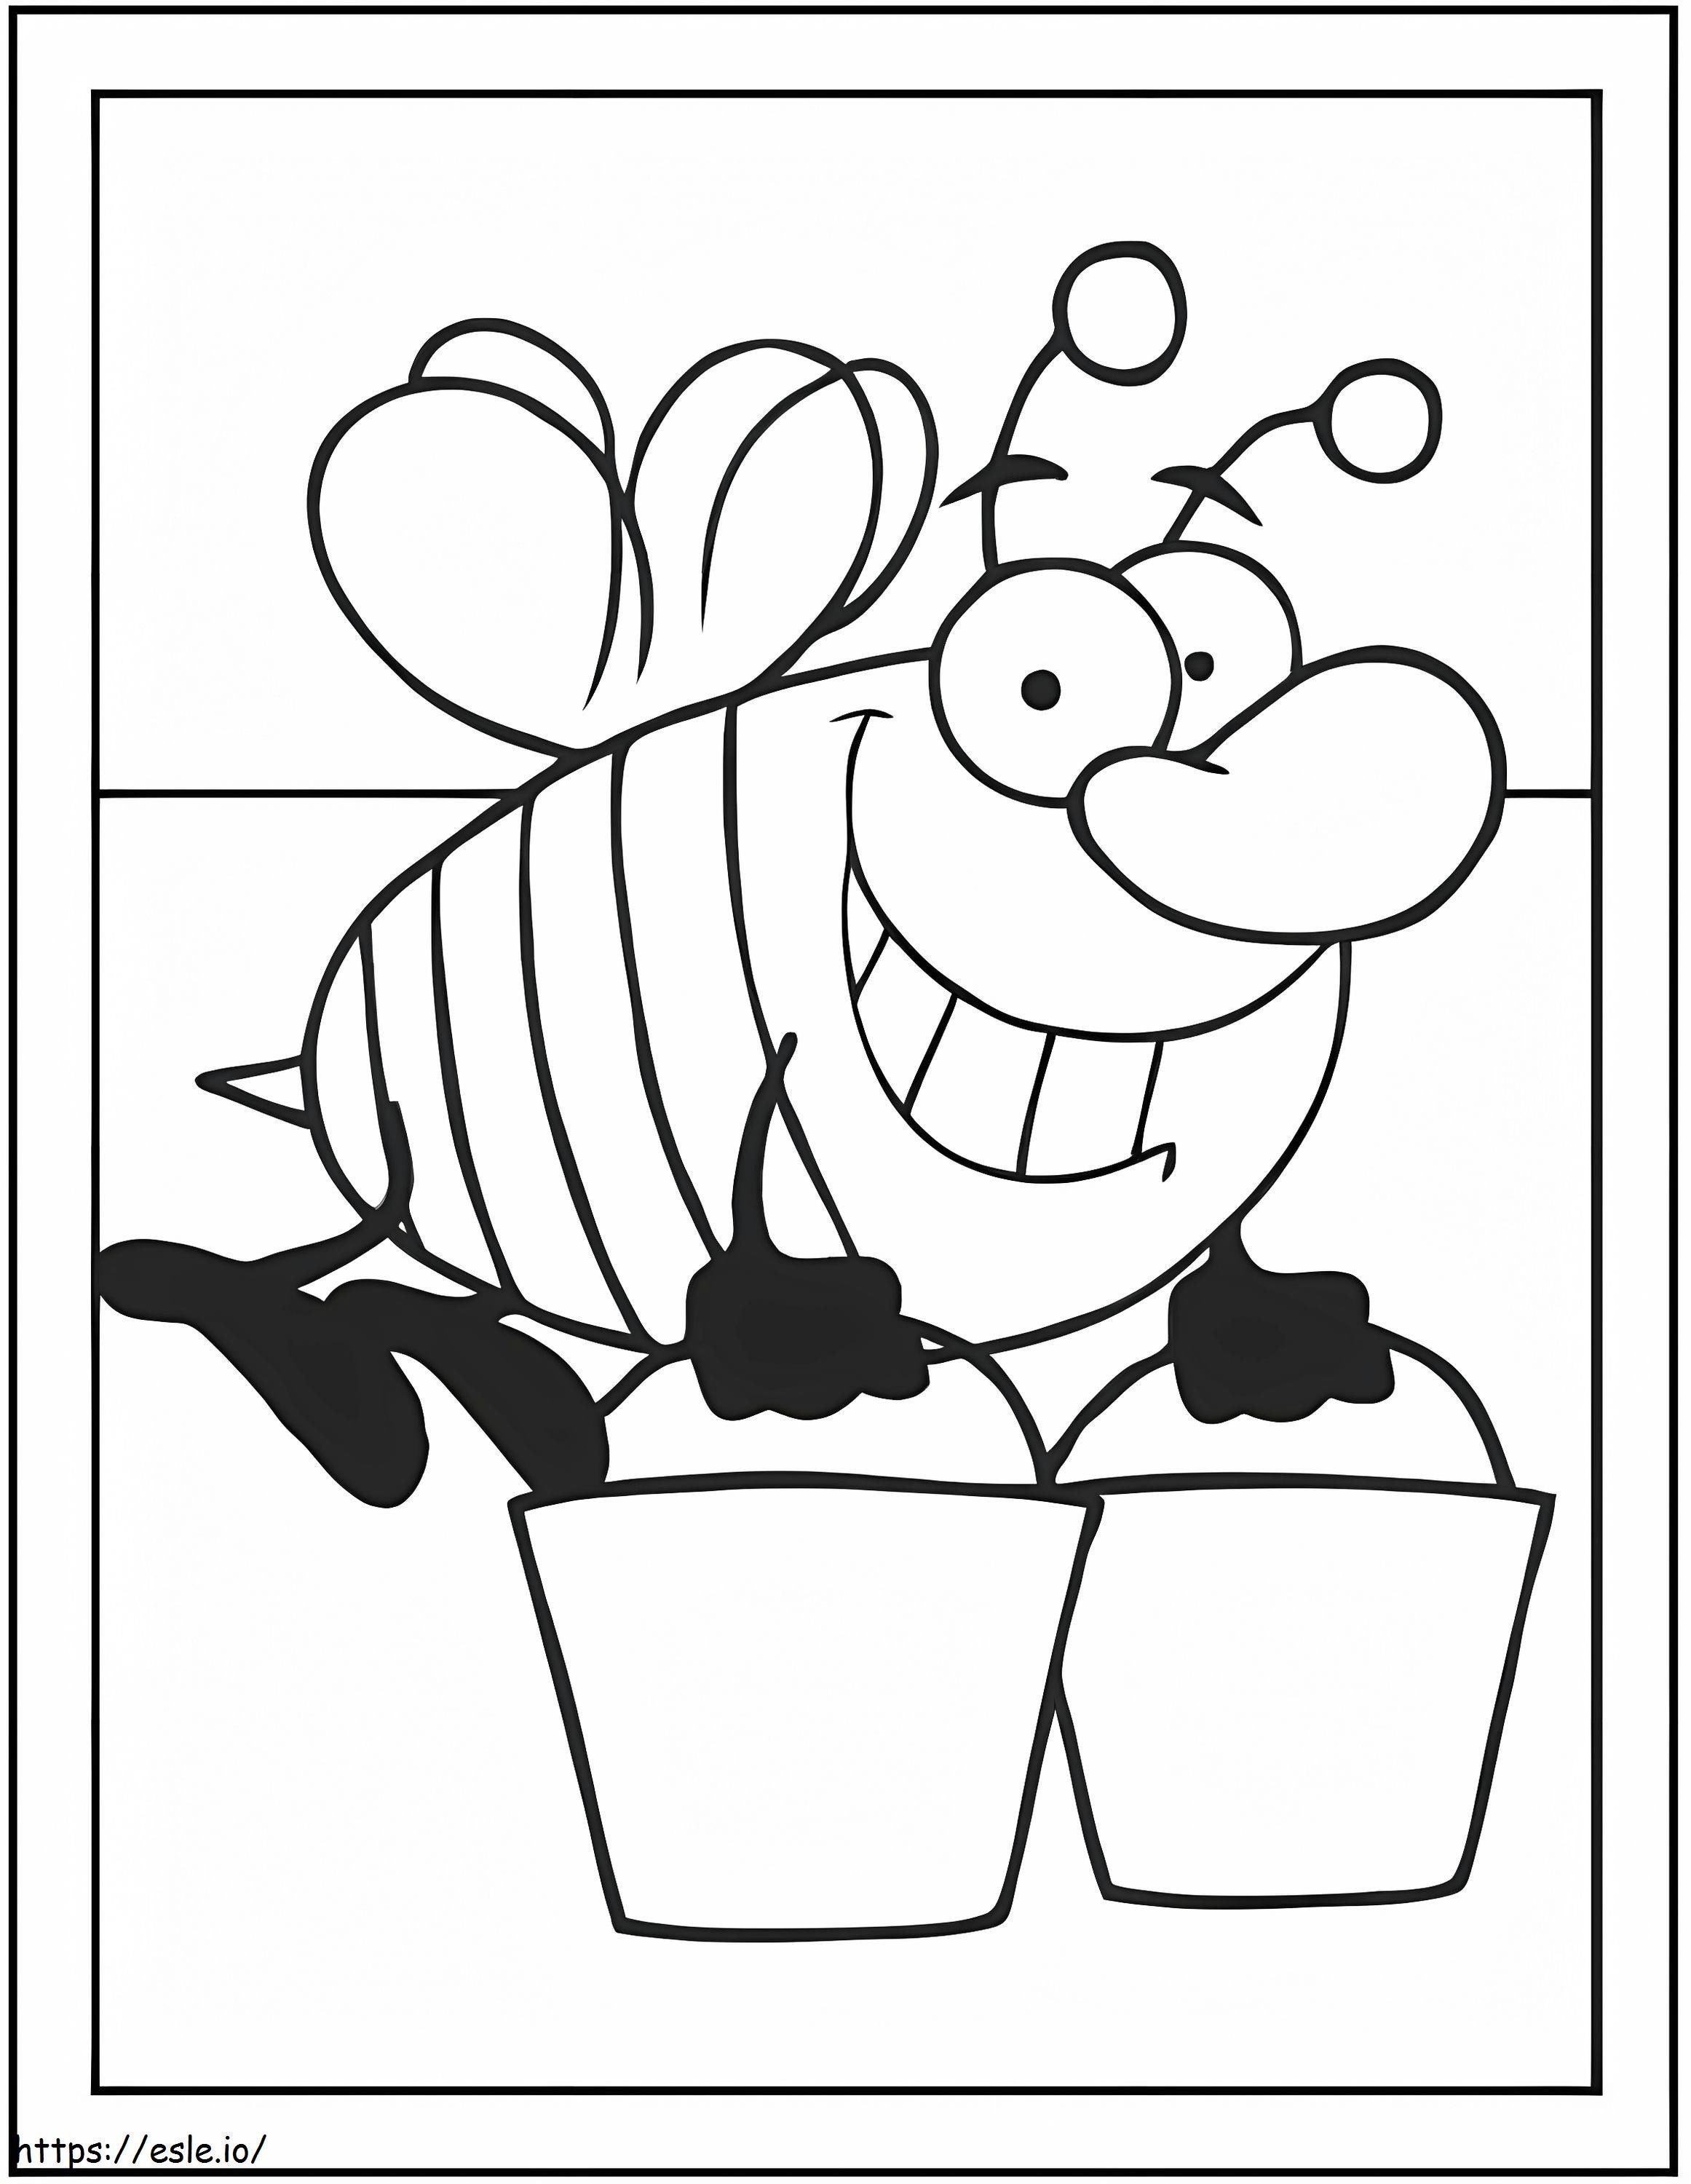 Biene trägt zwei Eimer ausmalbilder